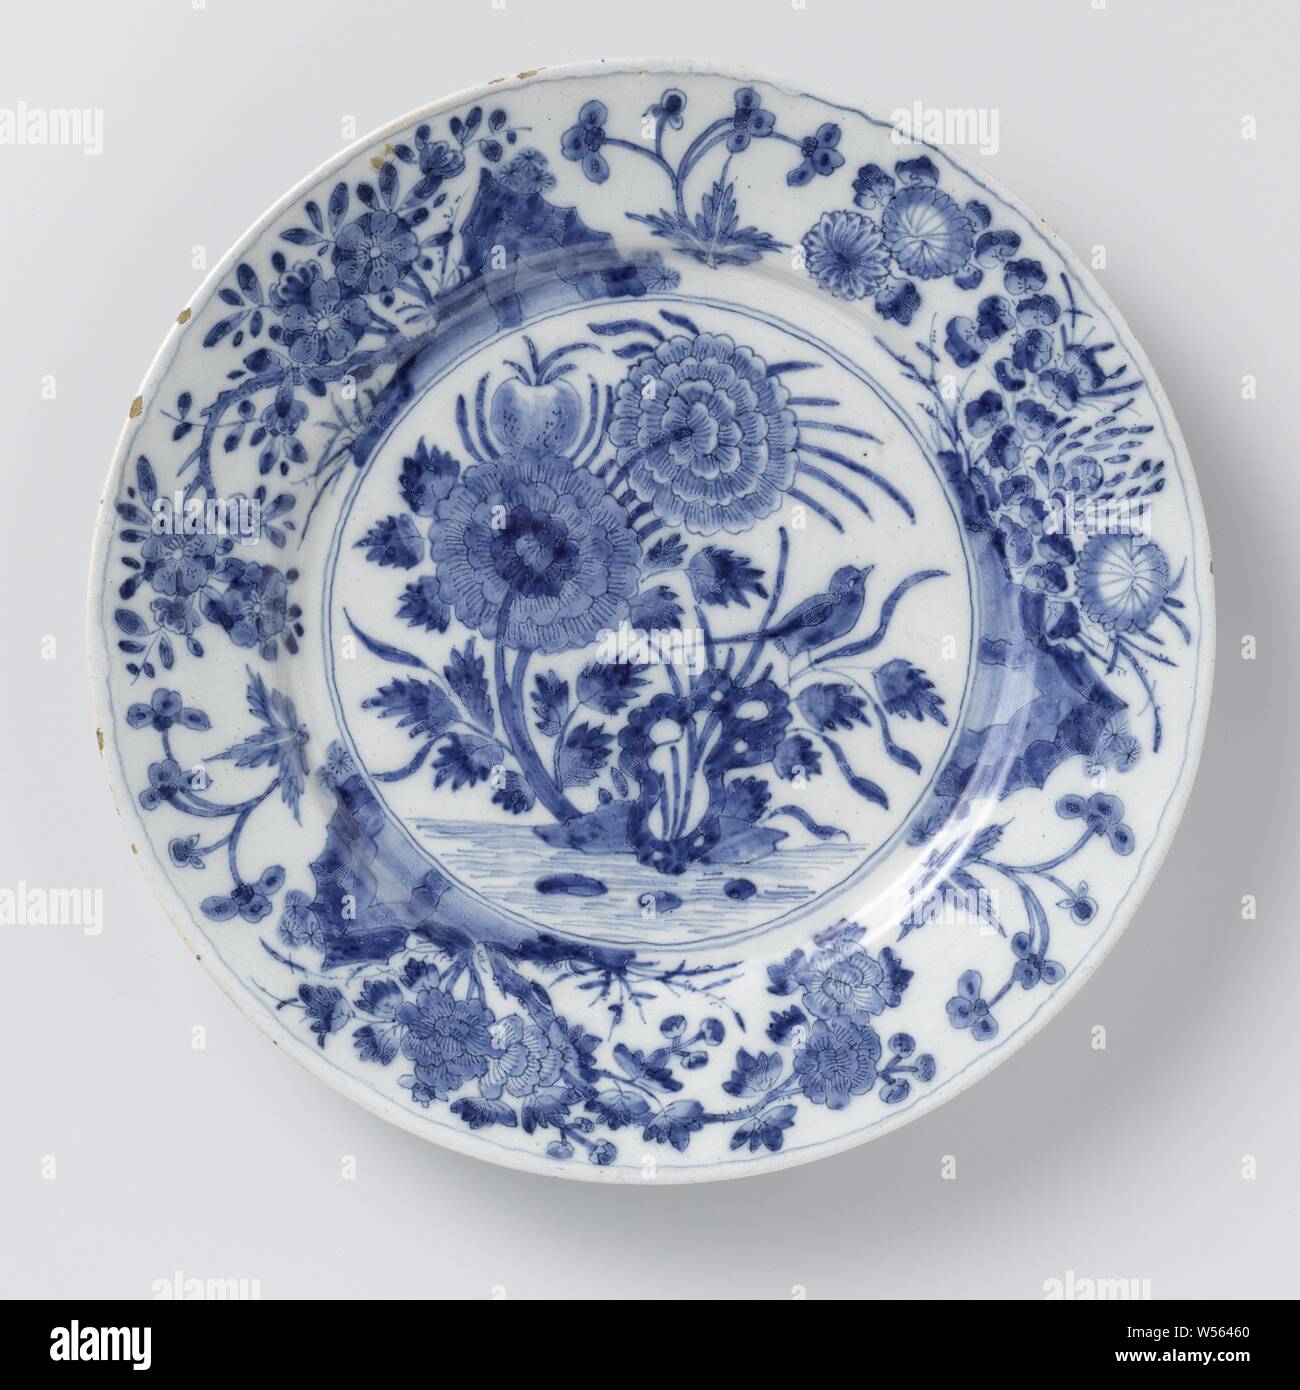 Assiette de la faïence avec décoration florale, de la plaque de céramique.  Peint en bleu avec